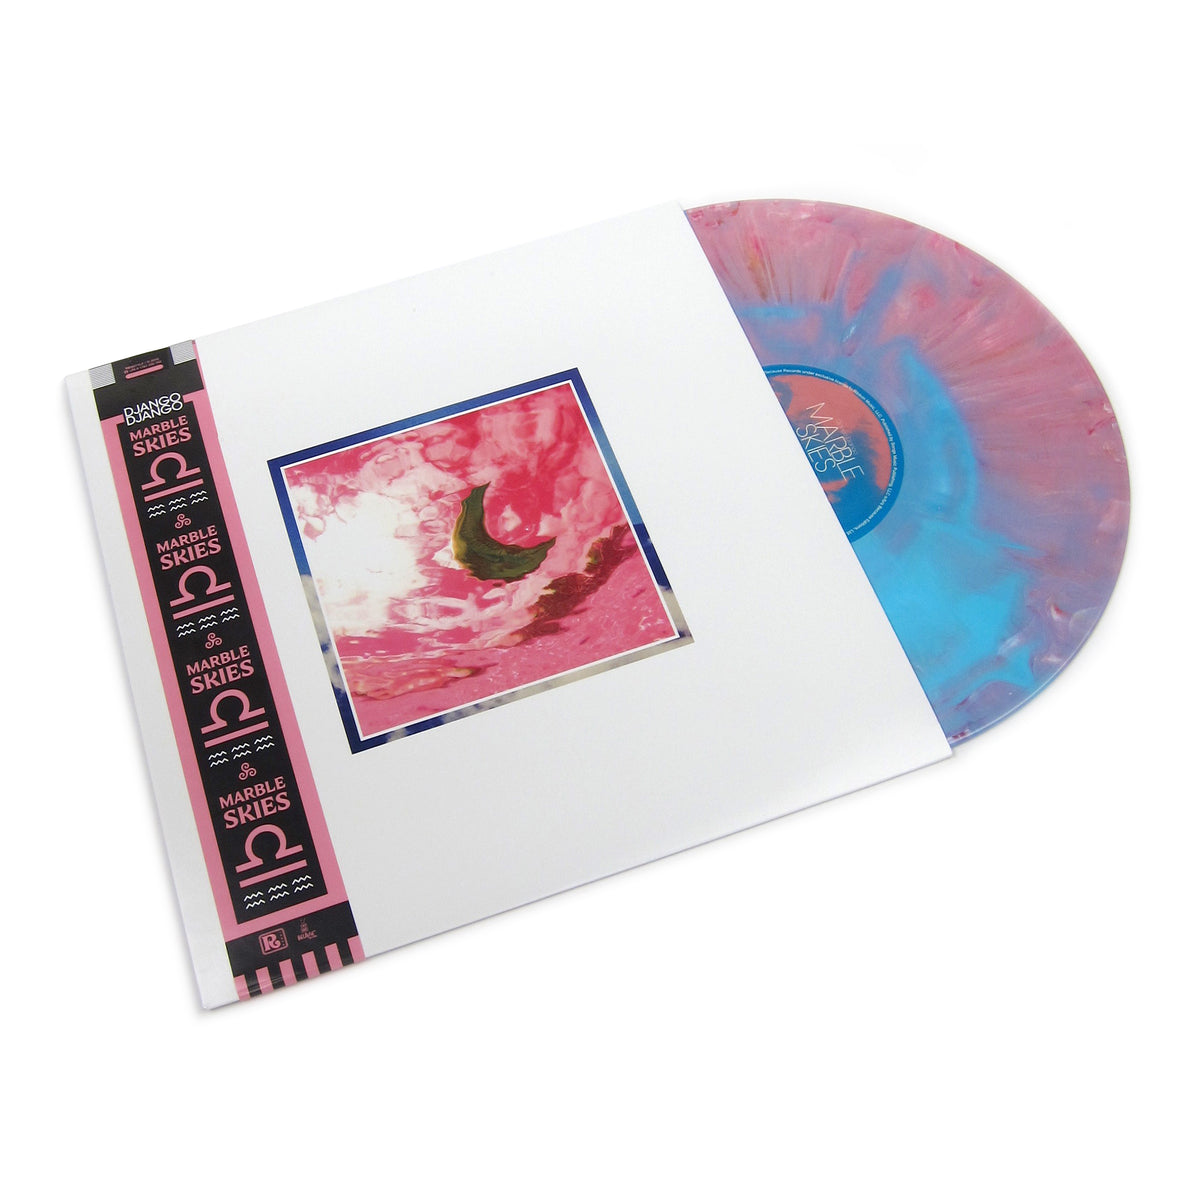 Django Django: Marble Skies (Indie Exclusive Pink & Blue Marble Vinyl ...